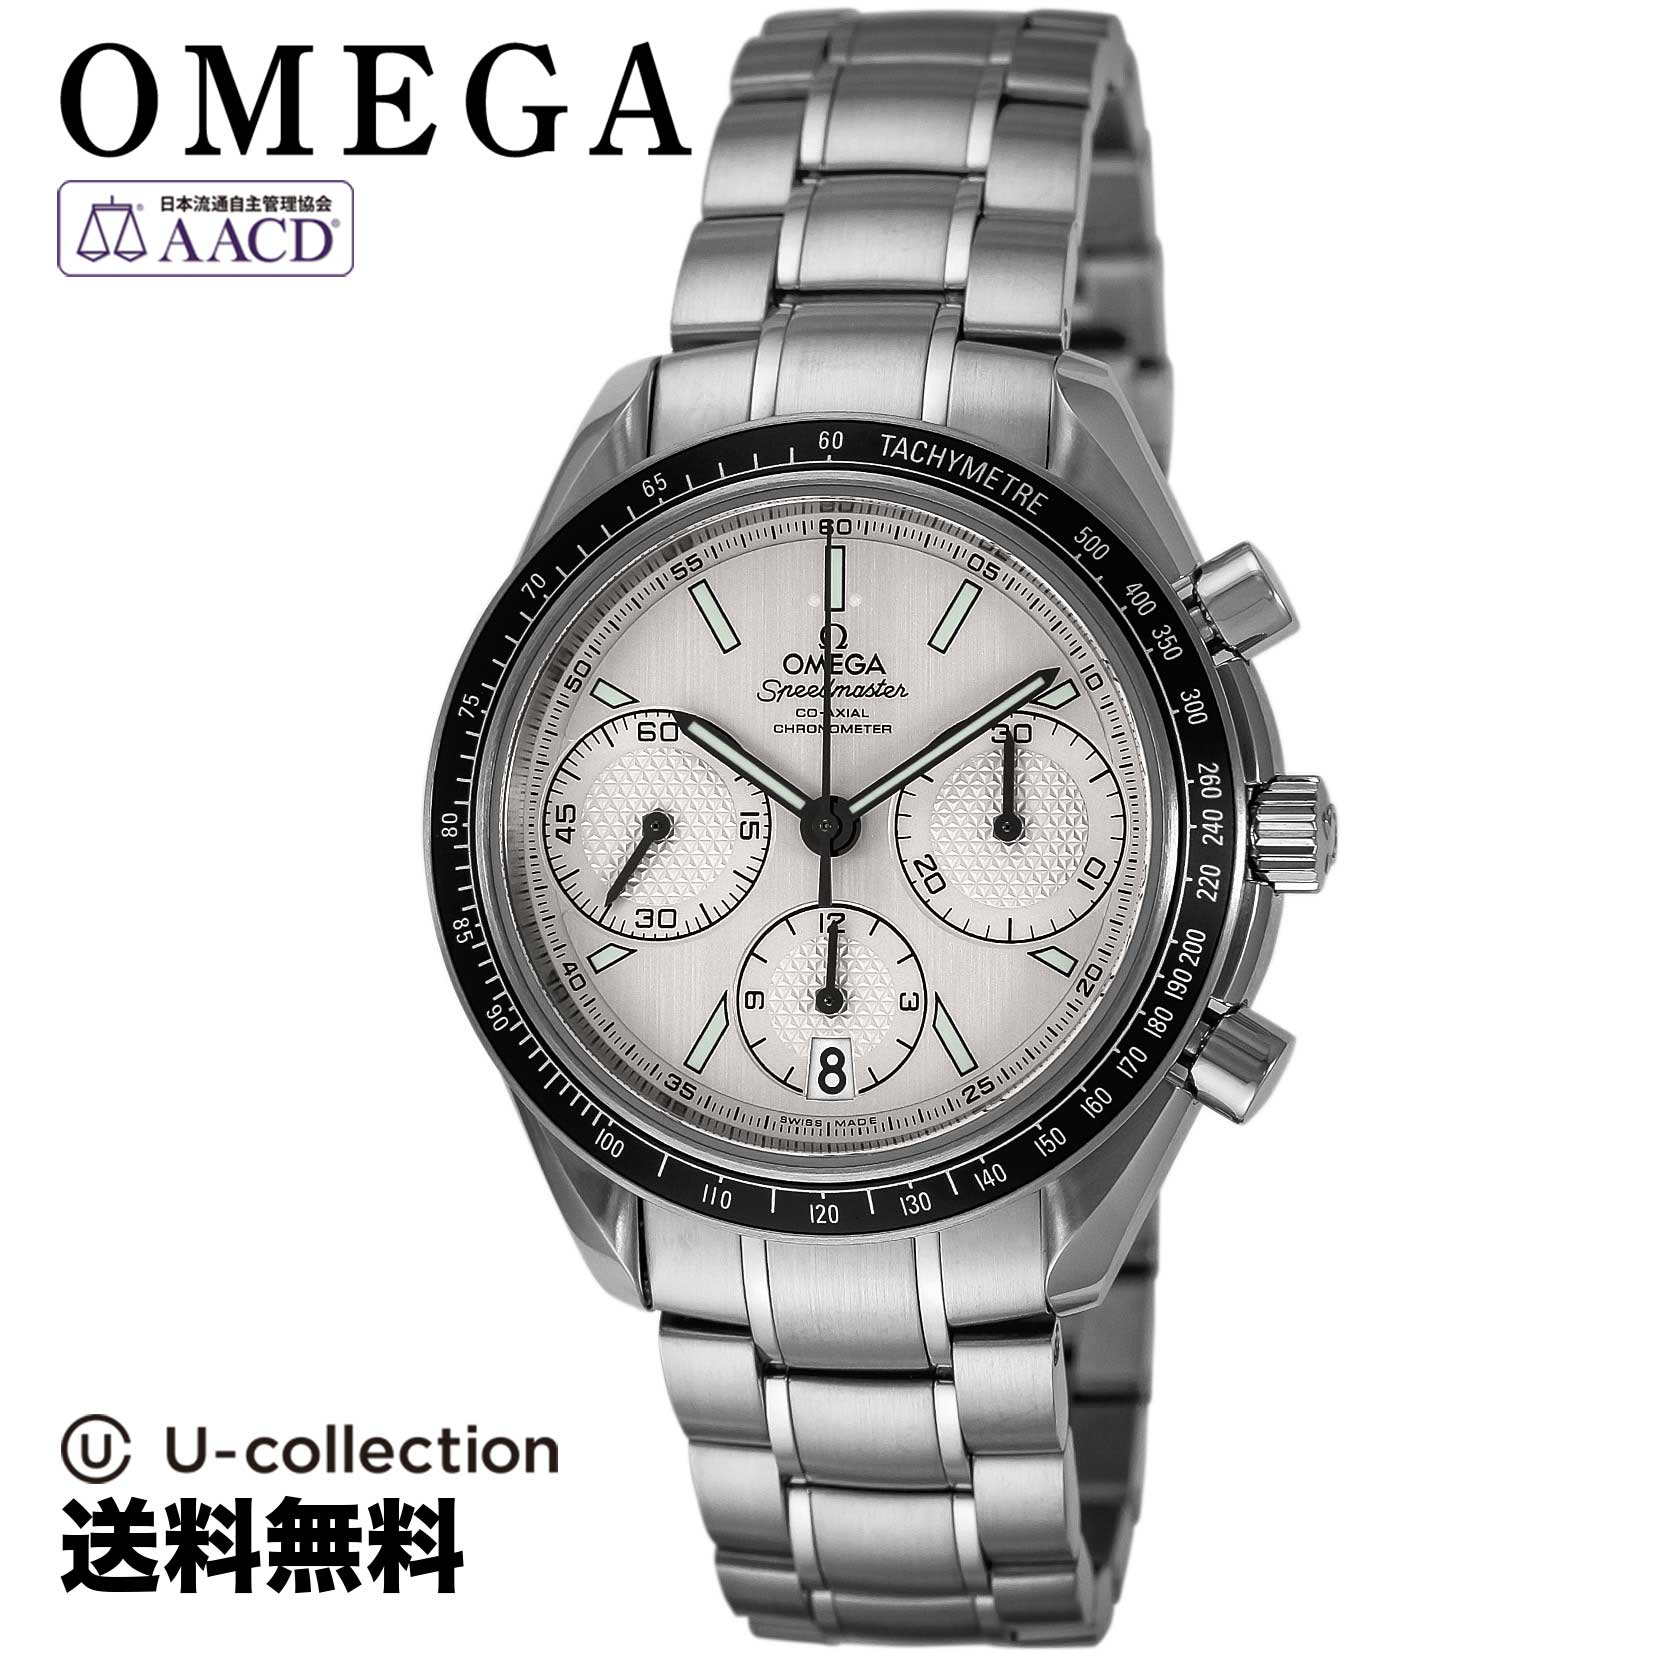 オメガ【腕時計】 OMEGA(オメガ) Speedmaster / スピードマスター メンズ シルバー コーアクシャル自動巻 326.30.40.50.02.001 時計 ブランド